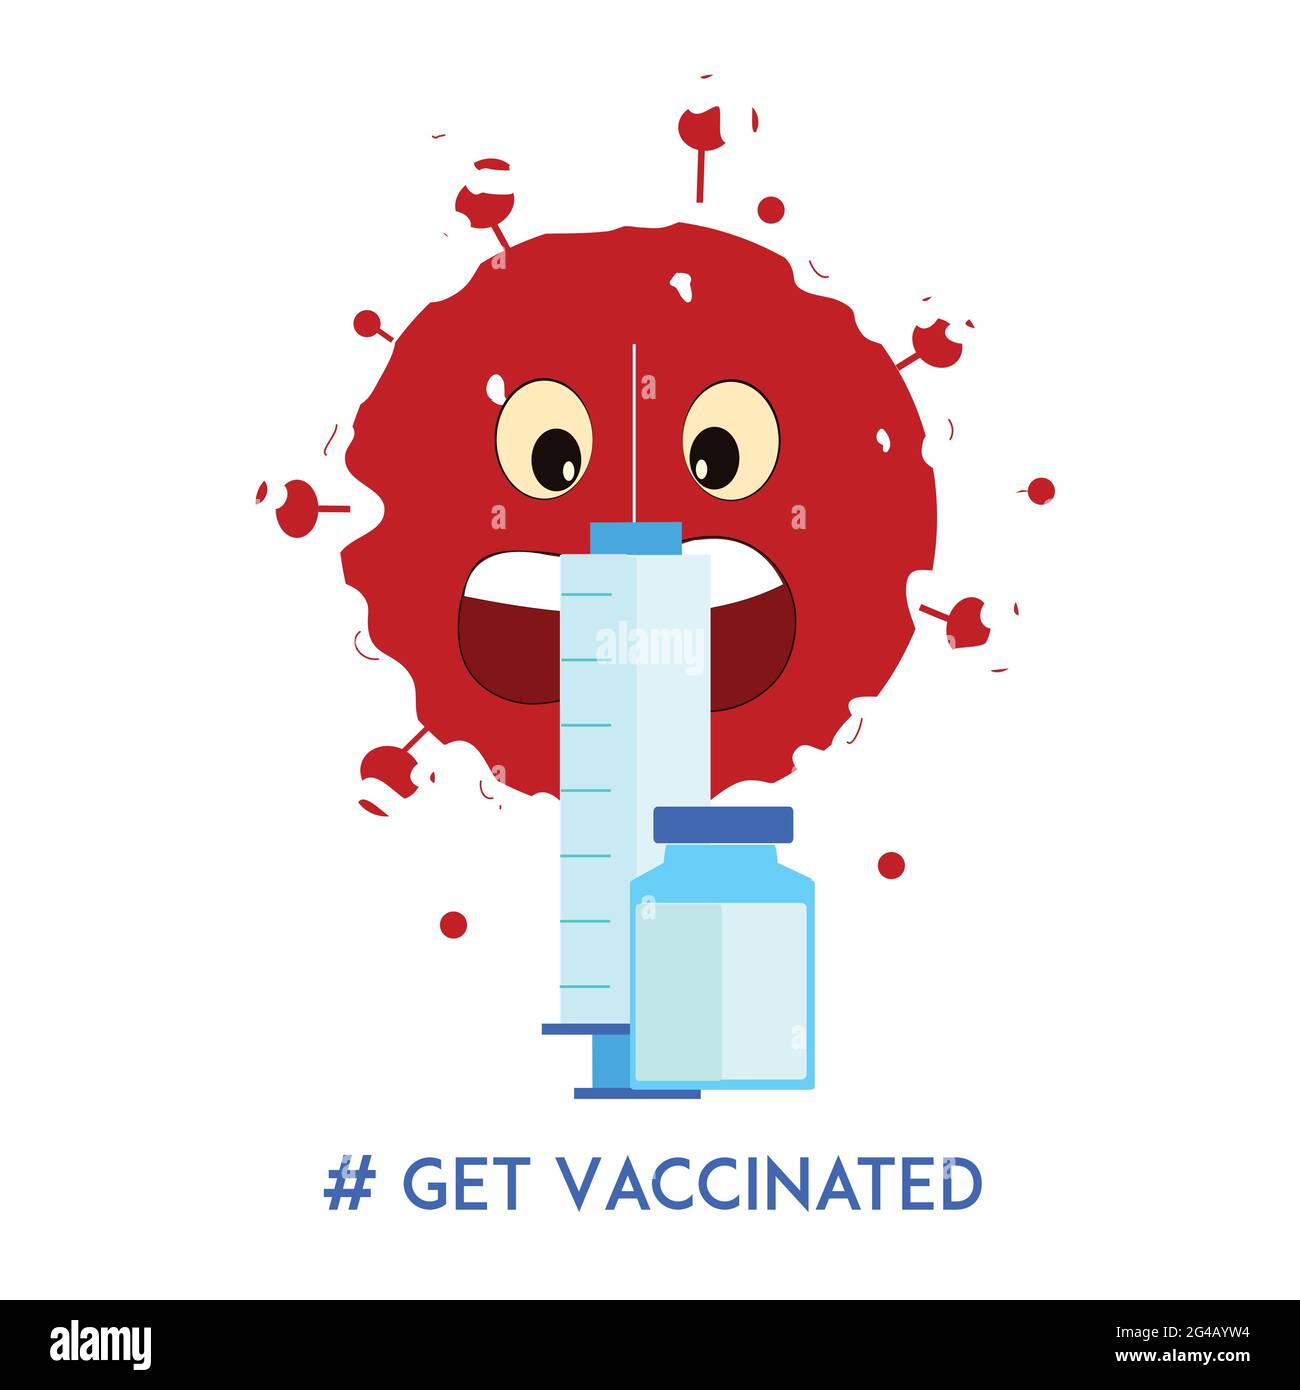 L'illustrazione della vaccinazione con sfondo bianco in questo indica che il cartone animato da virus rosso ha paura del vaccino (il contenuto è iniezione e flacone) Illustrazione Vettoriale